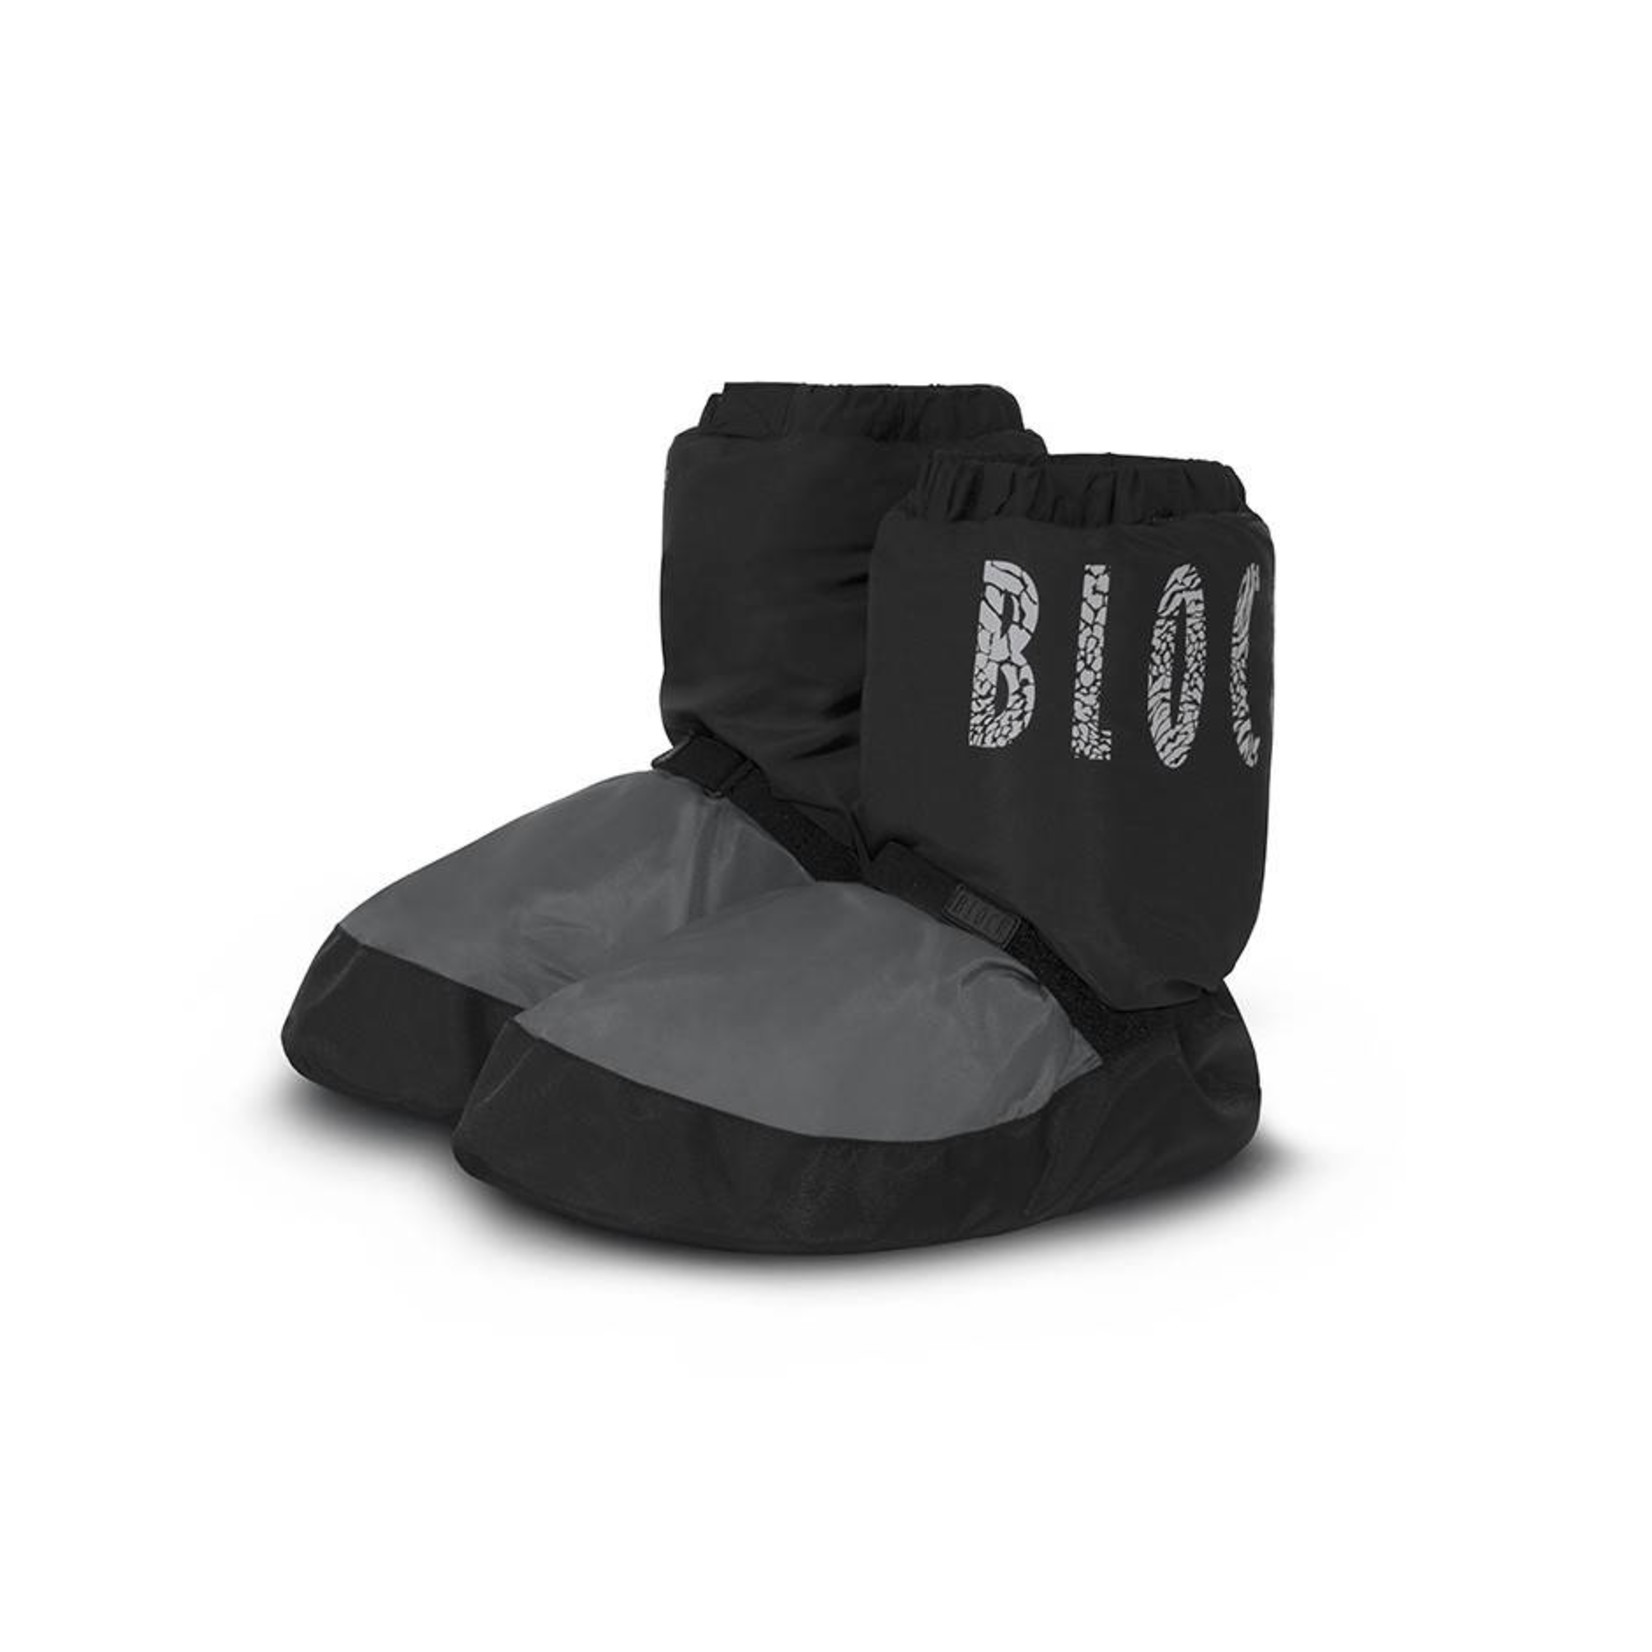 Bloch IM009TK Limited Edition Warm-up Bootie